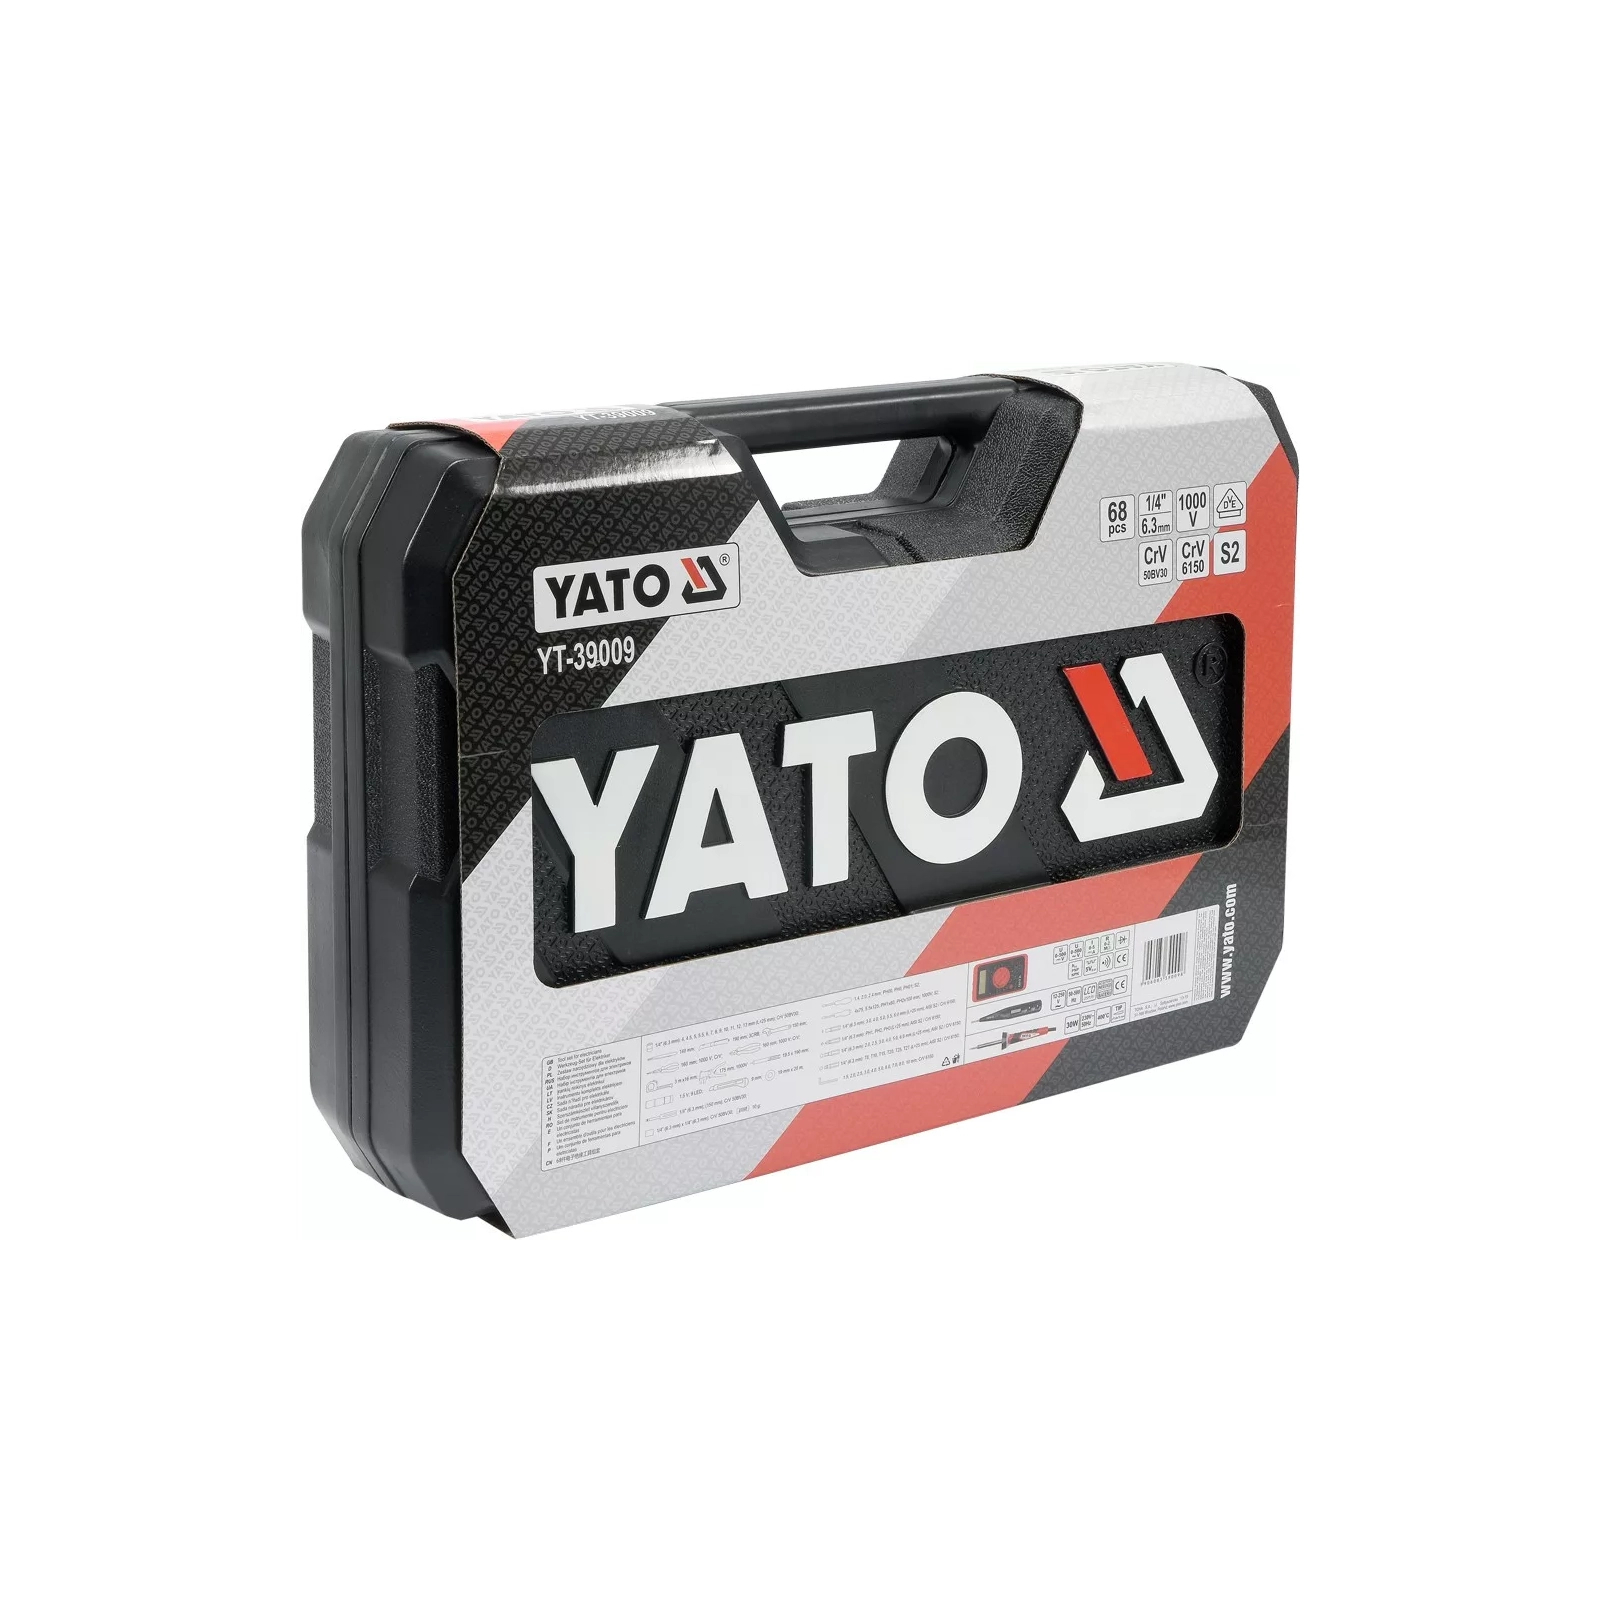 Набор инструментов Yato YT-39009 изображение 5